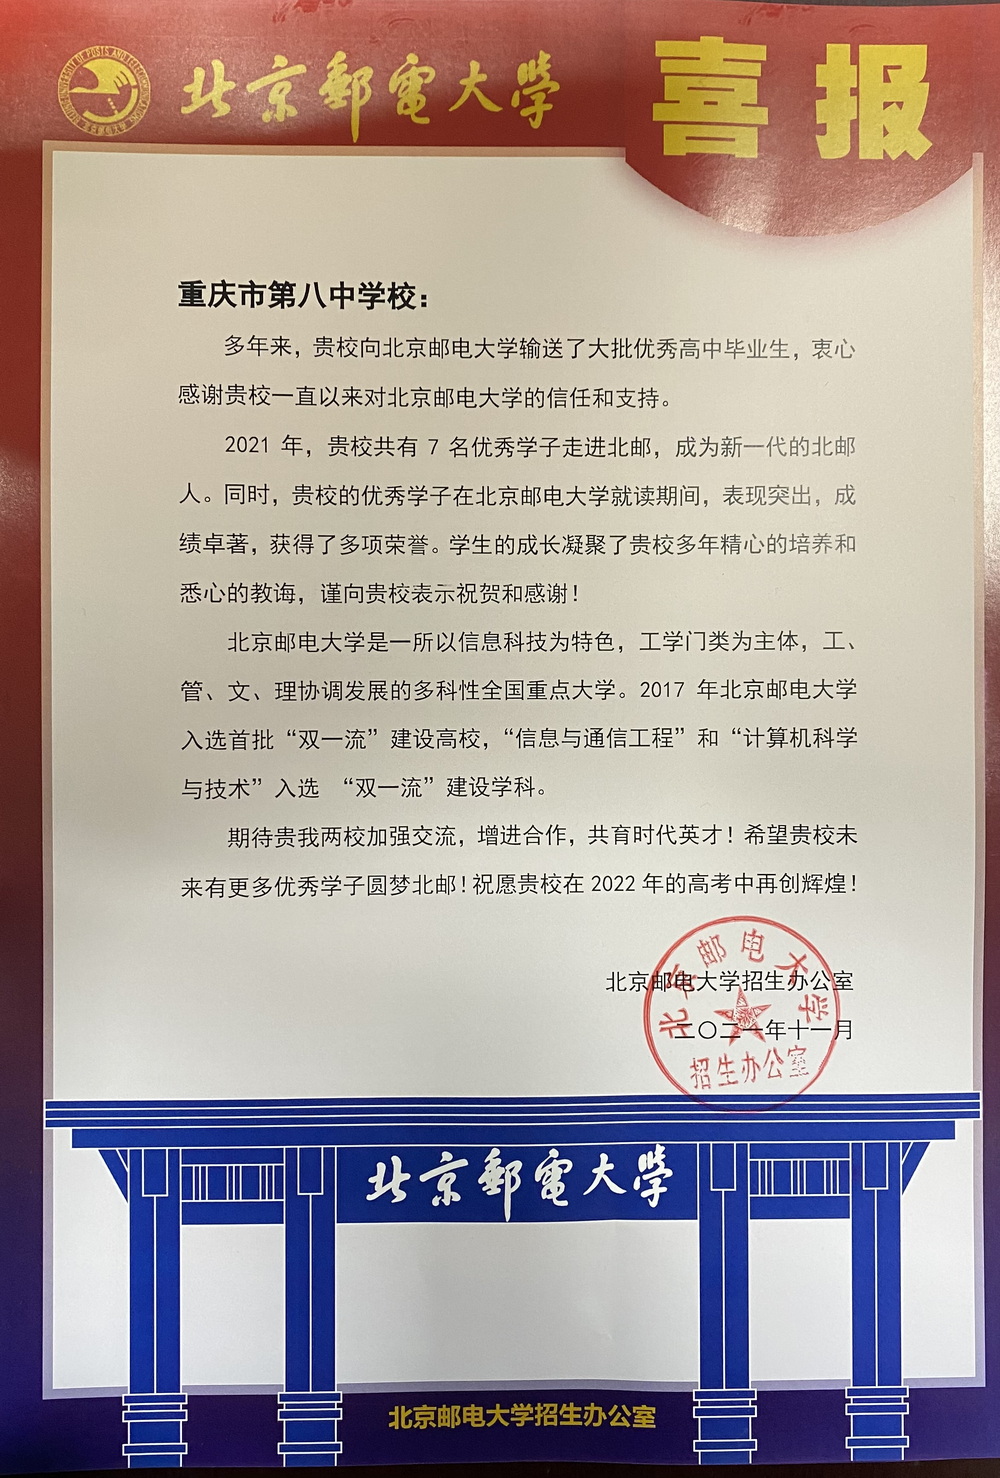 （39-1）2021年11月北京邮电大学_调整大小.JPG